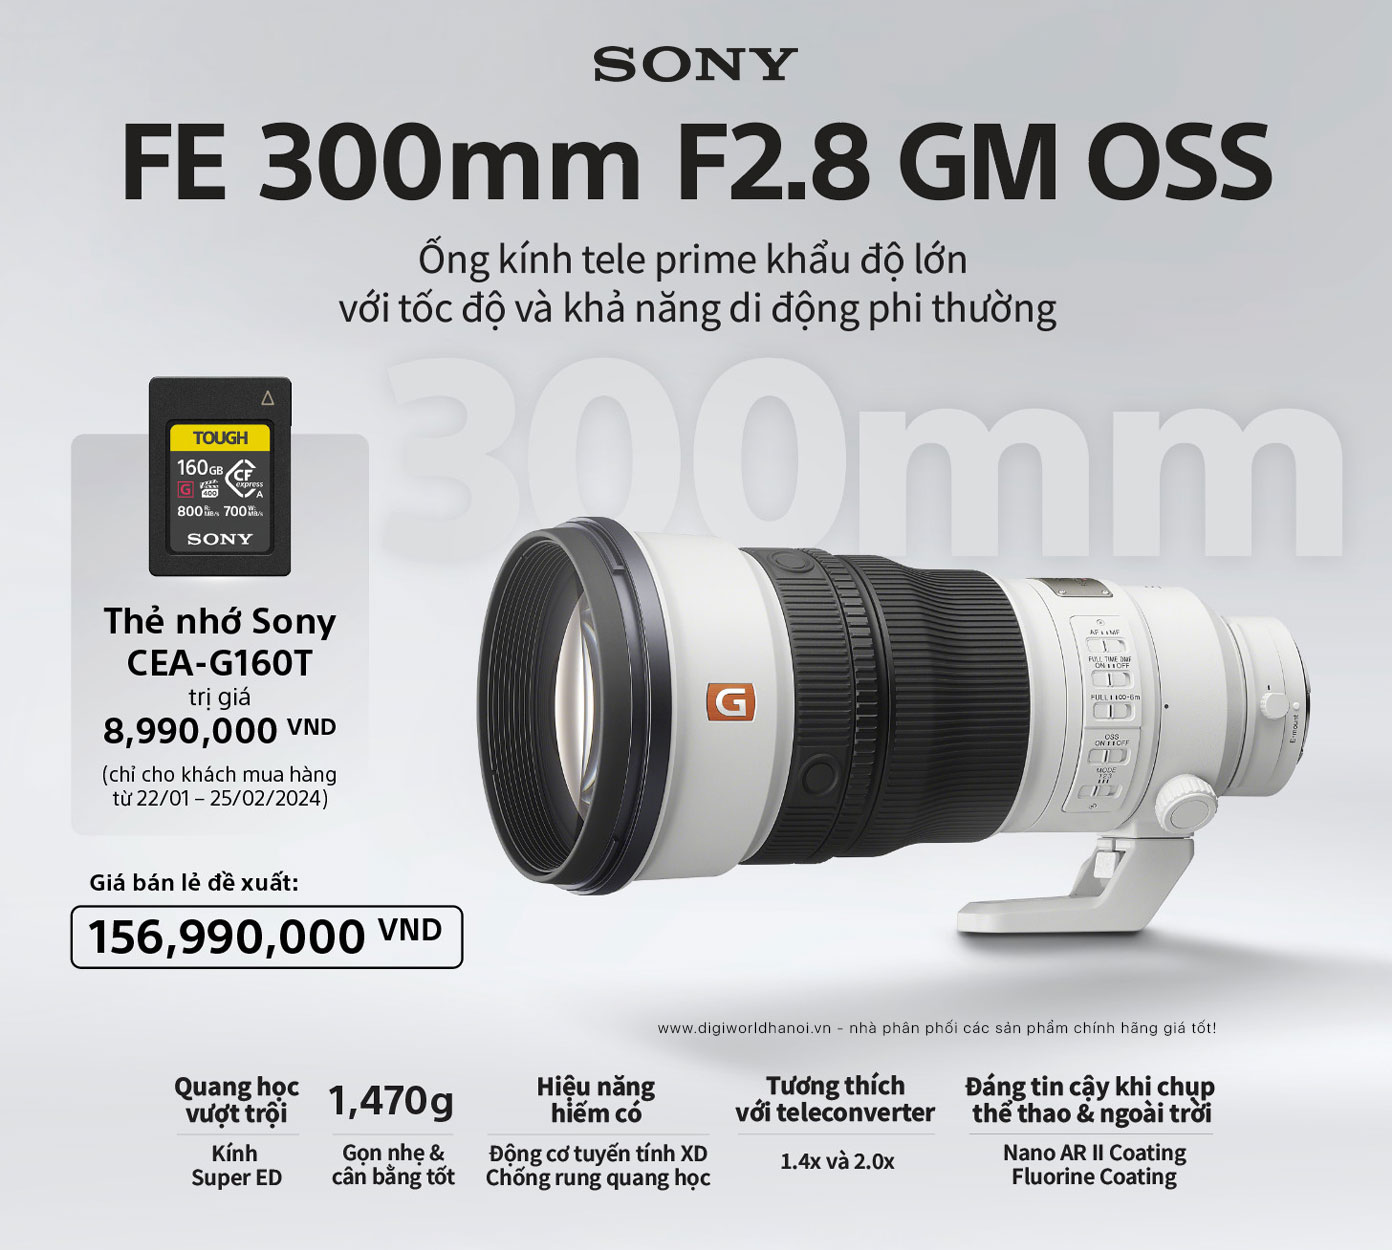 Đặt trước Ống kính Sony FE 300mm F2.8 GM OSS với giá siêu tốt và nhận quà khủng tại Digiworld Hà Nội!